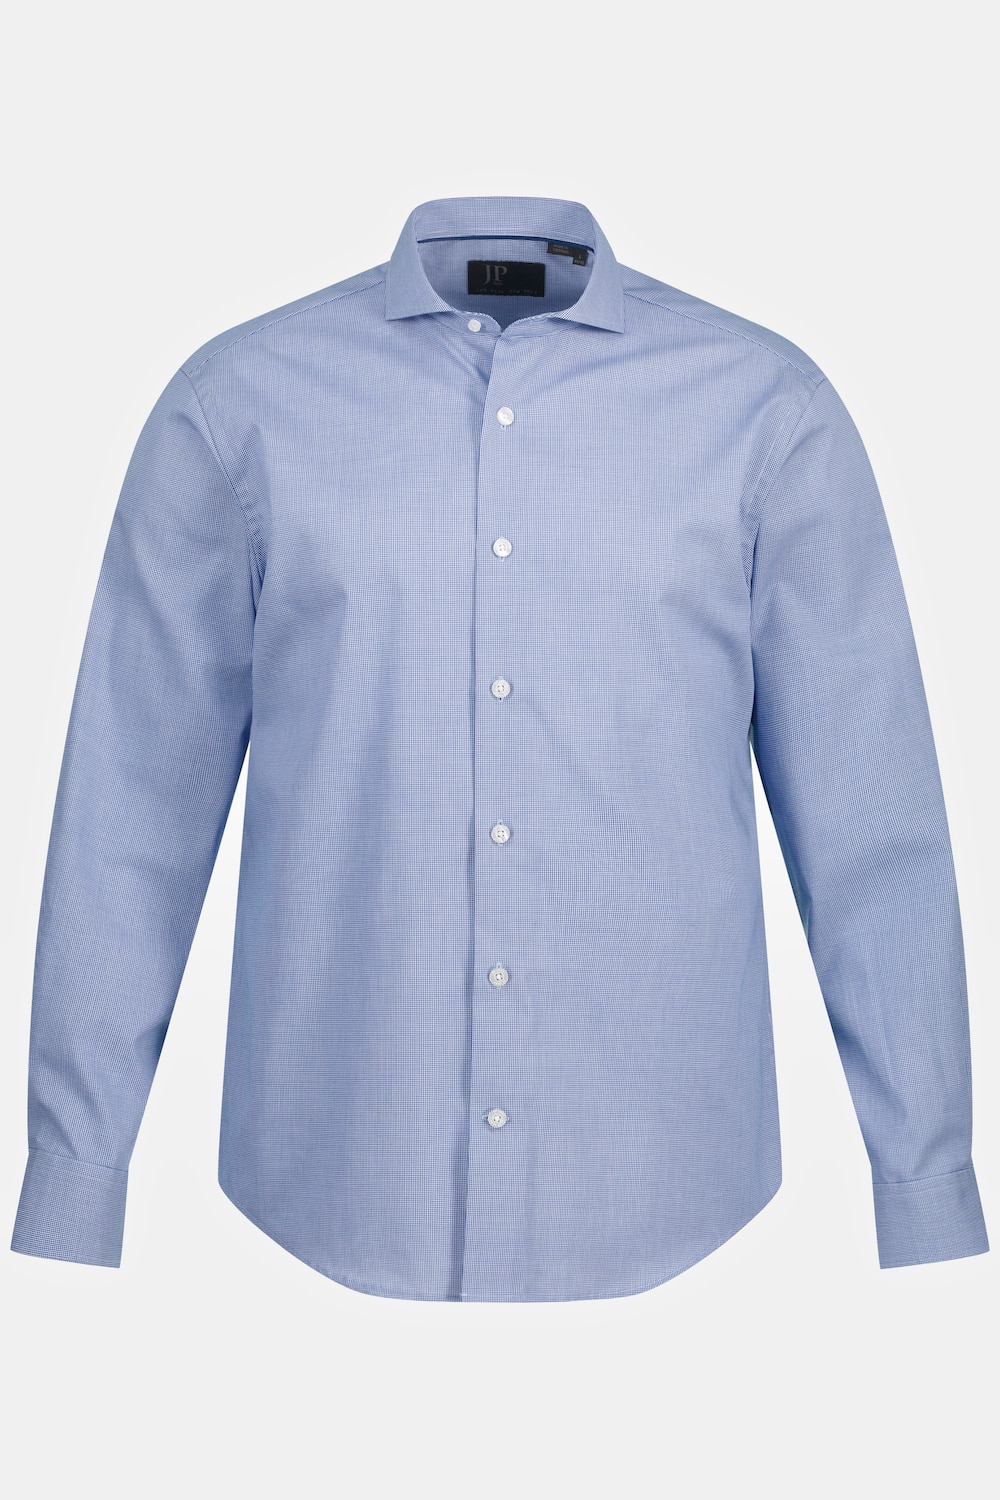 Grote Maten Overhemd, Heren, blauw, Maat: 3XL, Katoen, JP1880